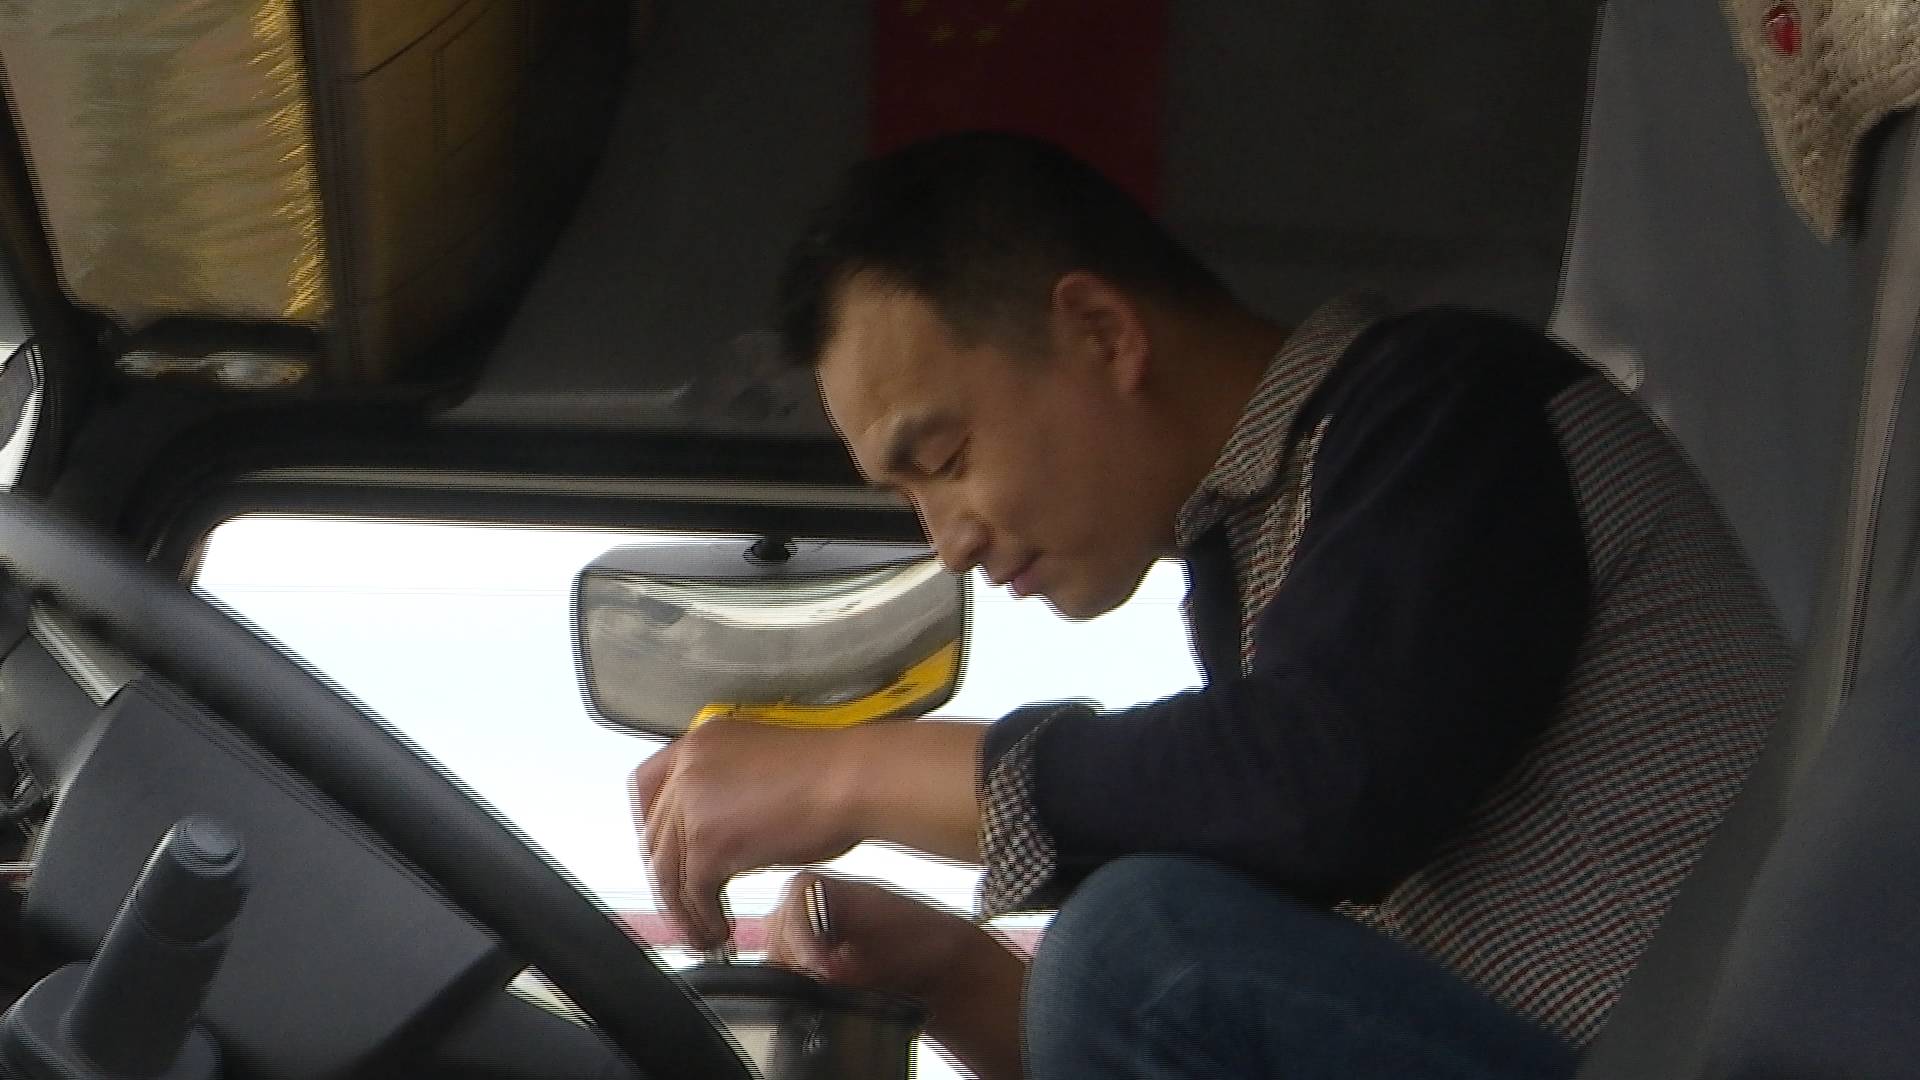 【致敬劳动者】闪电新闻记者探访凌晨货车司机:路途奔波,是为了生活更